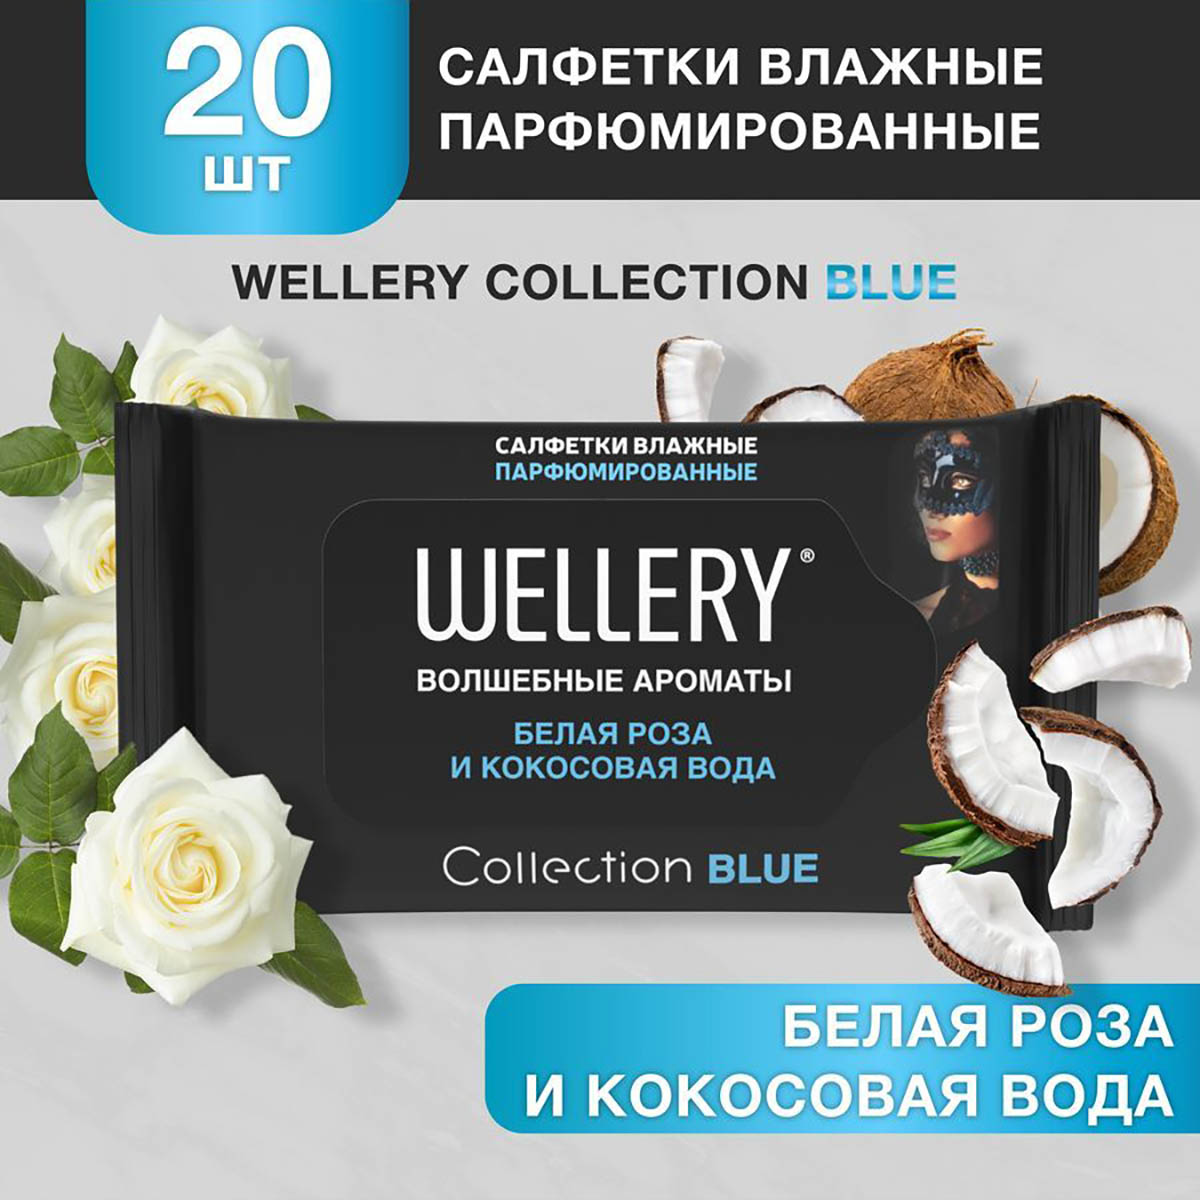 Салфетки влажные Wellery Collection Blue универсальные, белая роза, кокосовая вода 20 шт влажные очищающие салфетки для тела mavi beyaz blue white 50 шт